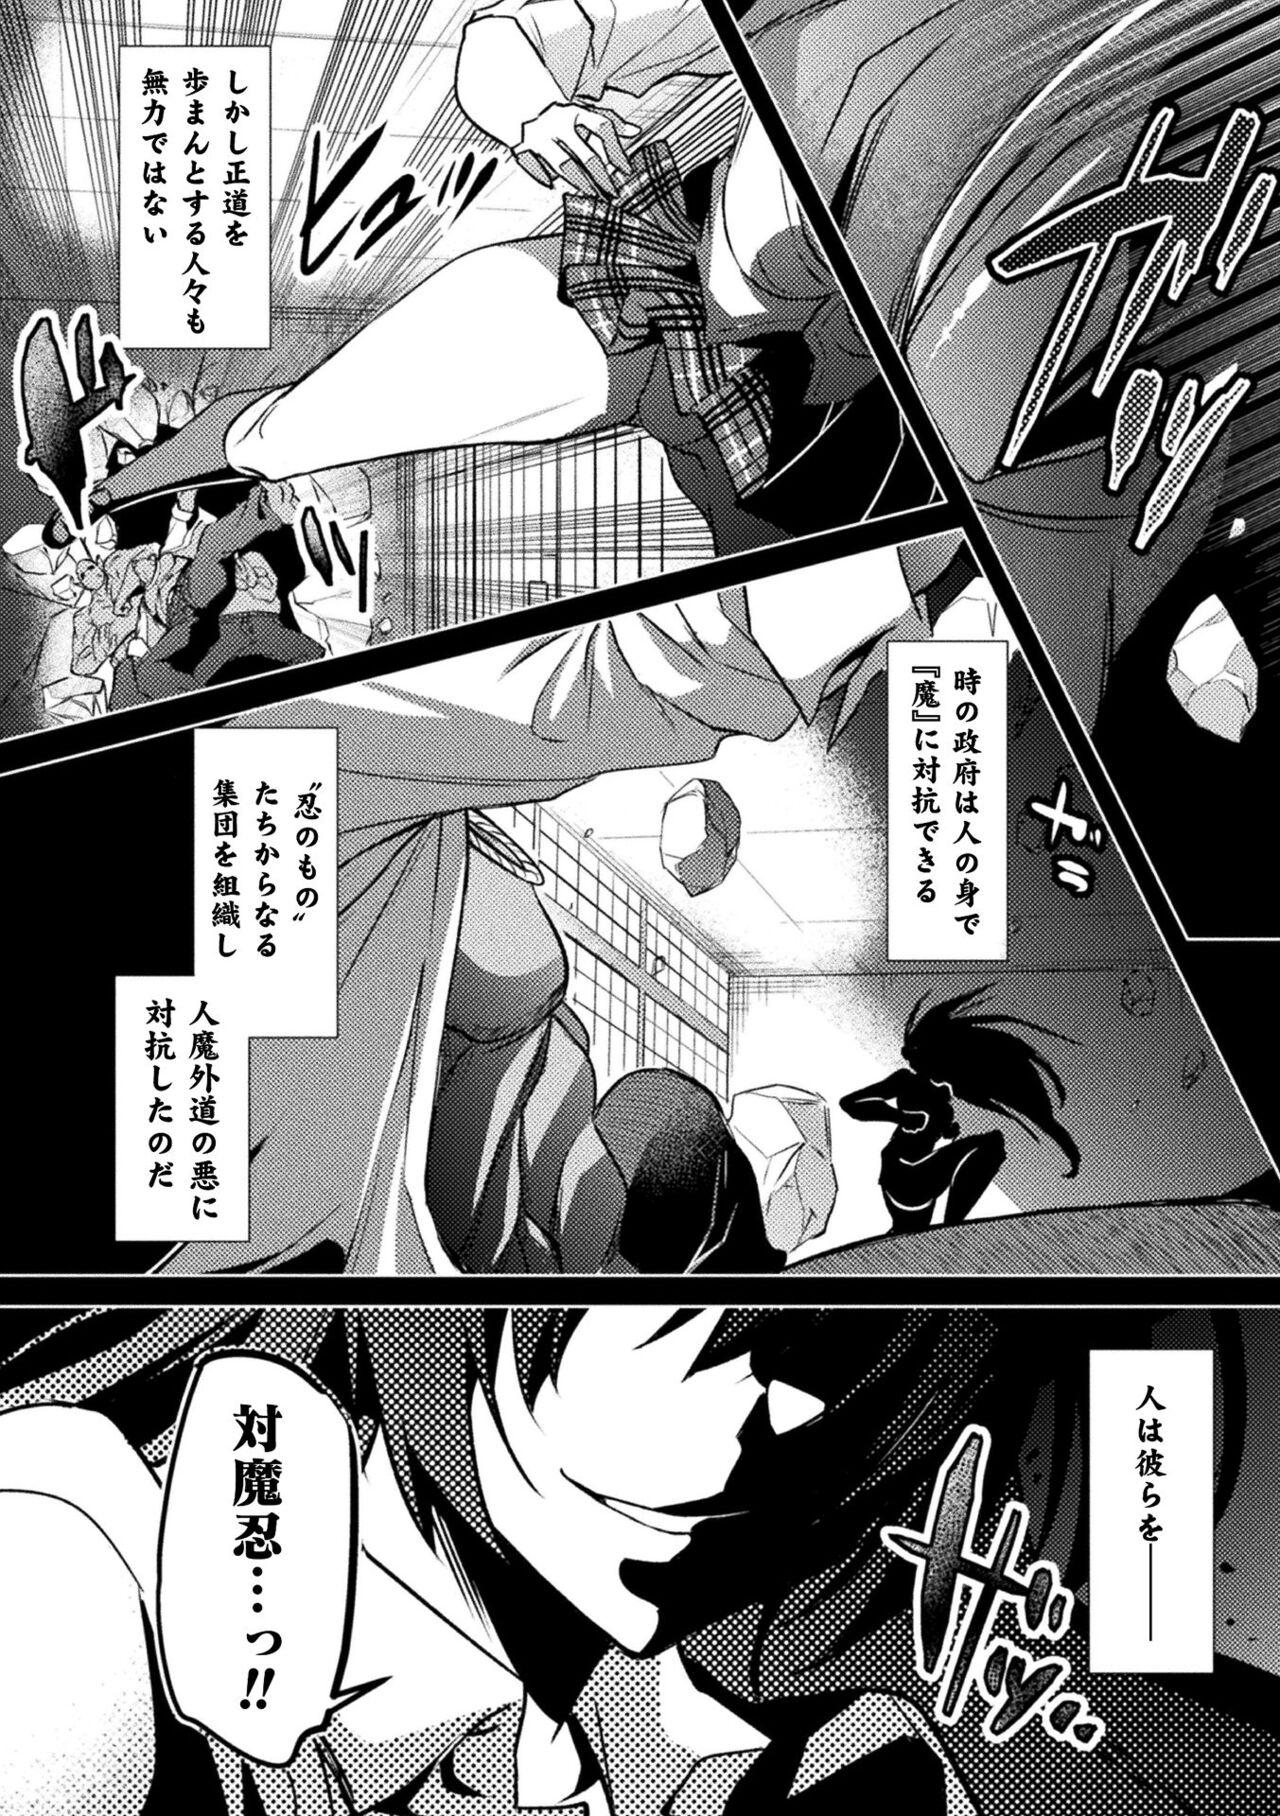 Peeing Kukkoro Heroines Vol. 21 First - Page 8